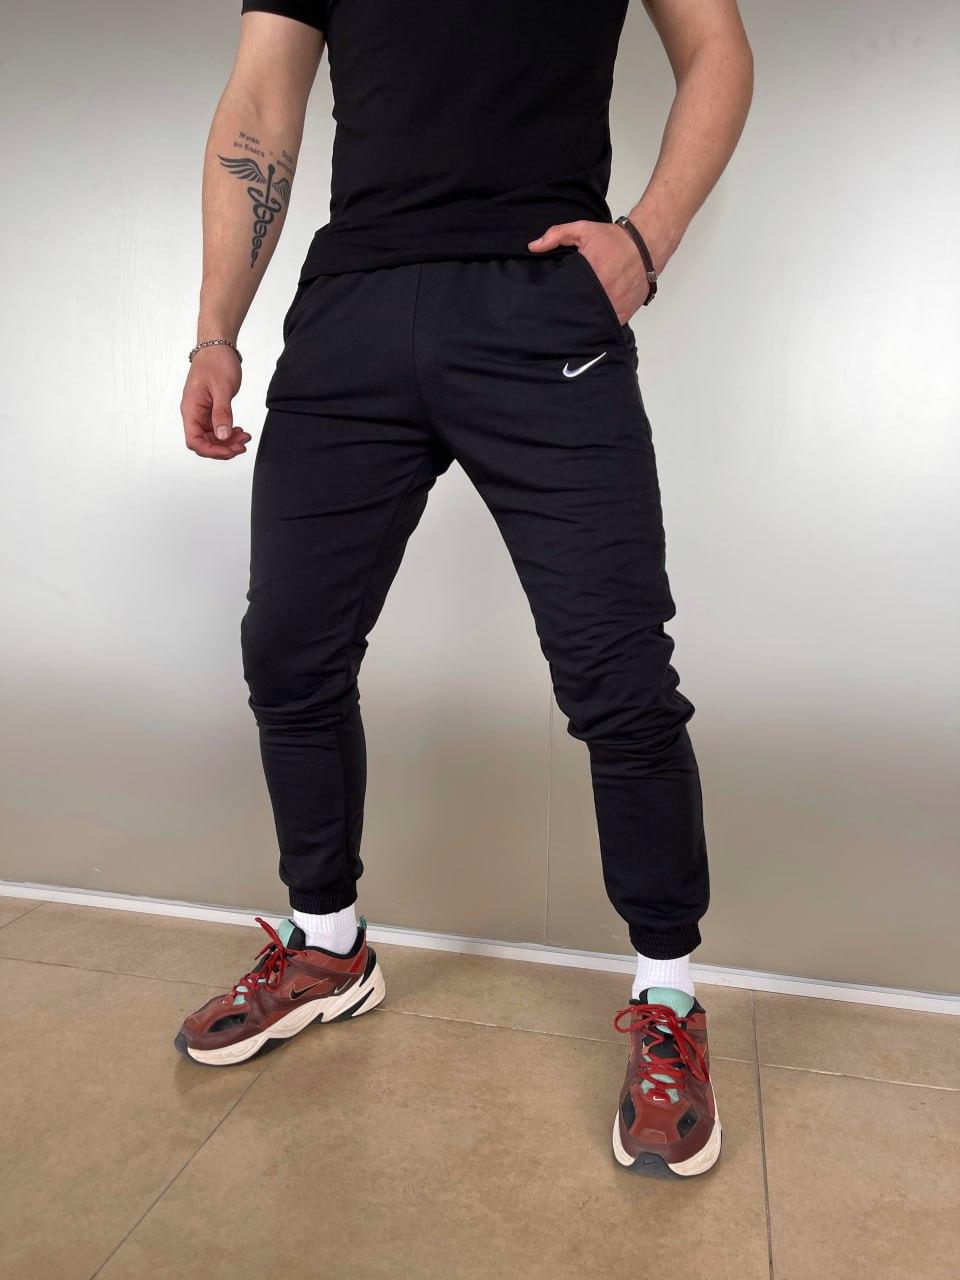 Чоловічі спортивні штани Nike весняні осінні брюки Найк чорні